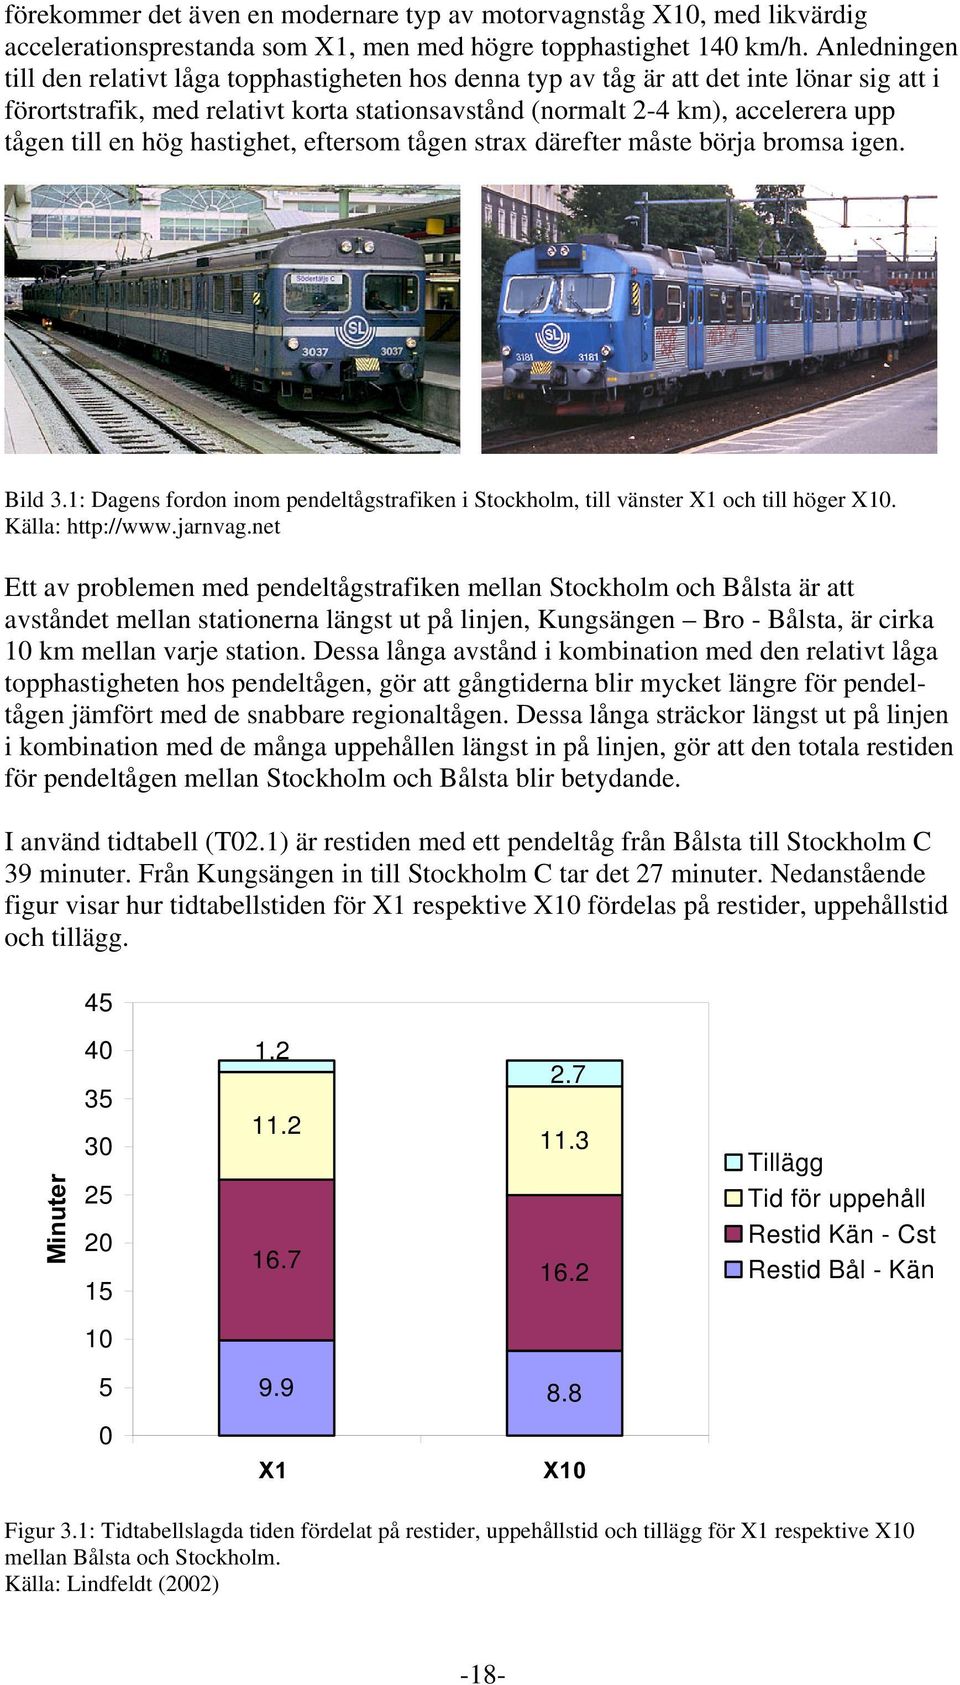 en hög hastighet, eftersom tågen strax därefter måste börja bromsa igen. Bild 3.1: Dagens fordon inom pendeltågstrafiken i Stockholm, till vänster X1 och till höger X10. Källa: http://www.jarnvag.